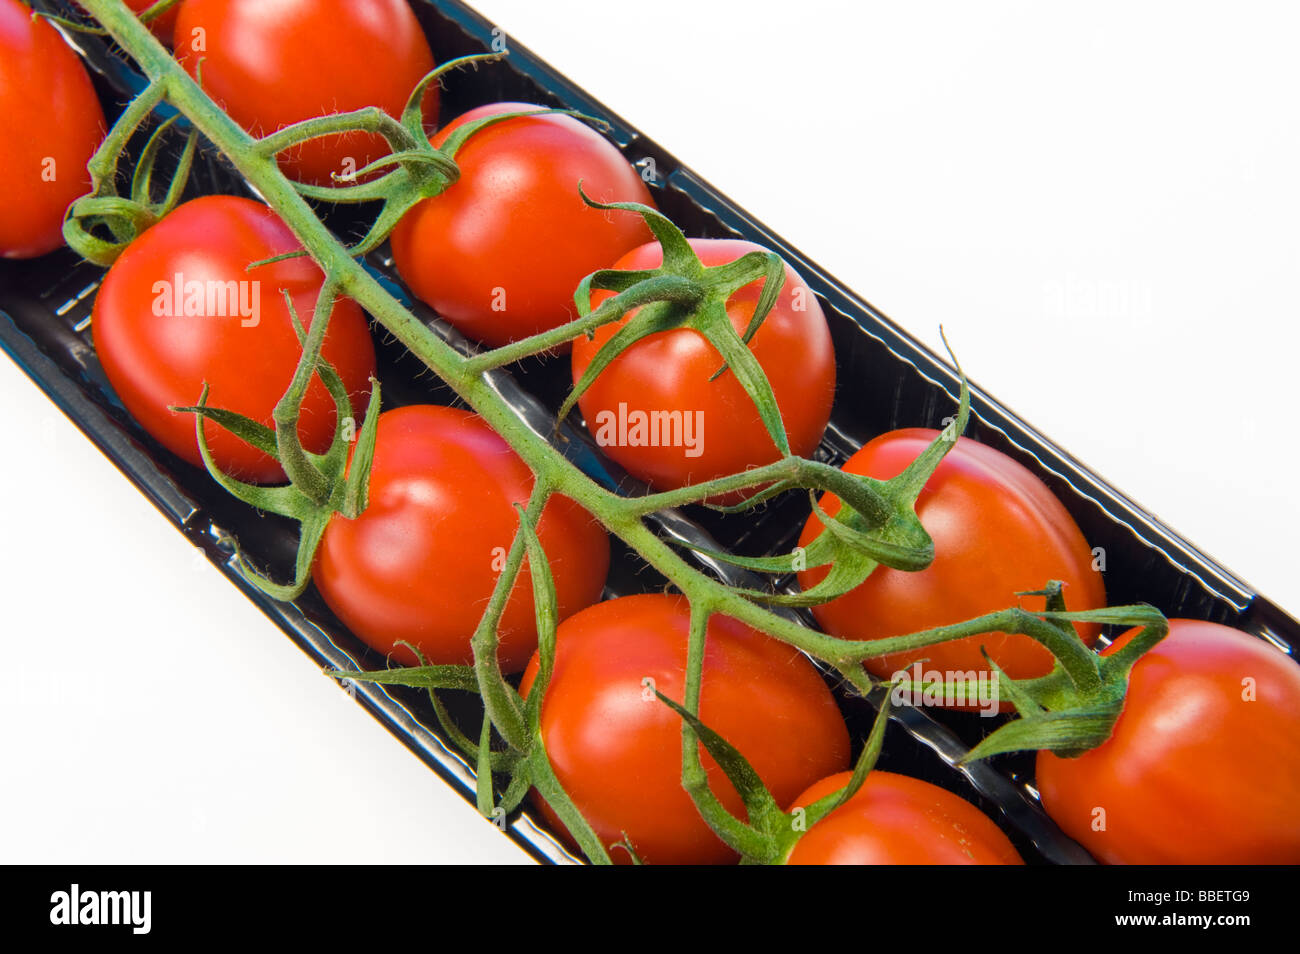 Pflaumentomate Rispe in schwarz verkaufen Box rot grün schwarz weißen Hintergrund Plumtomatoes Tast lecker gesund Gesundheit feine Mini Essen Stockfoto